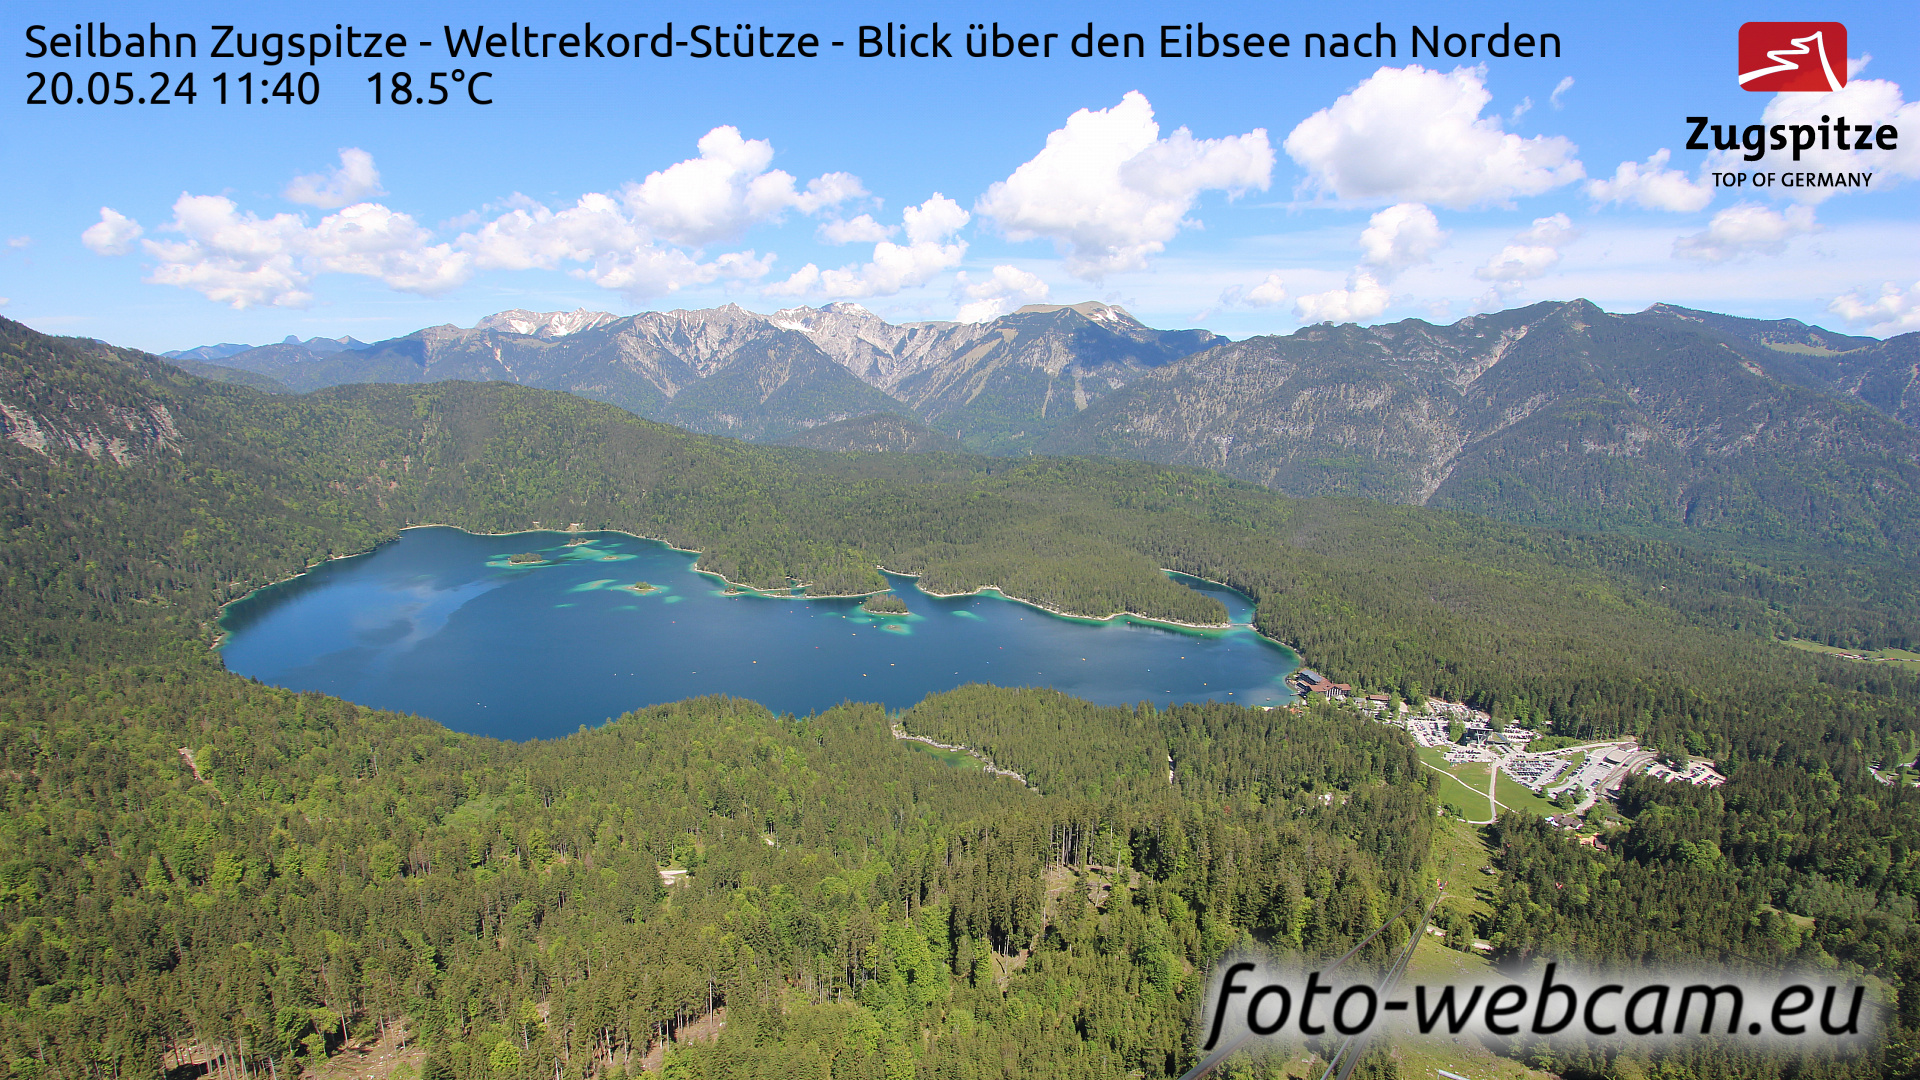 Zugspitze Wed. 11:49